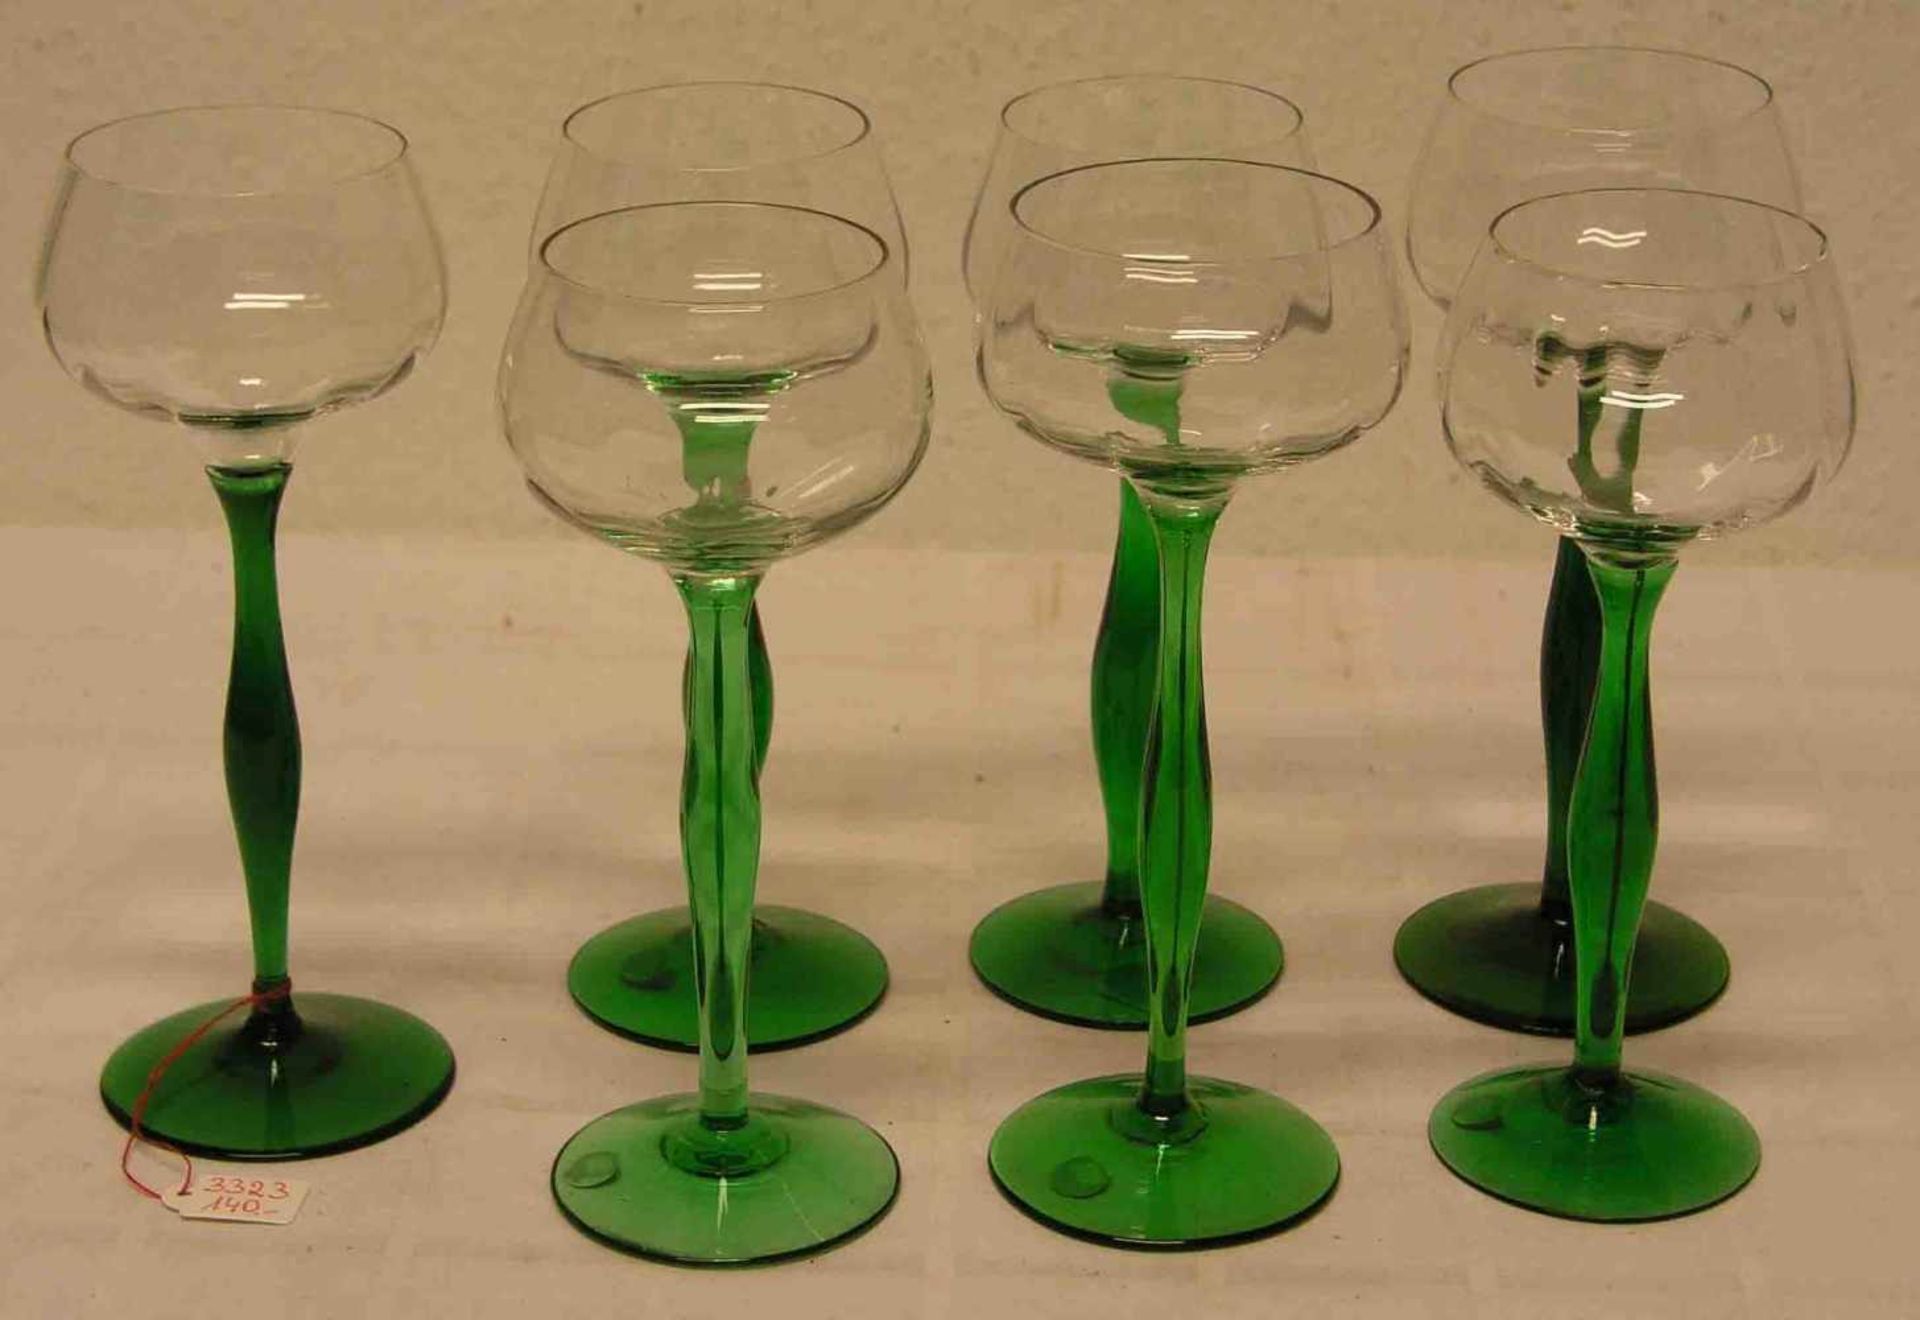 Satz von sieben Jugendstil-Weingläsern, Entwurf Peter Behrens, längsoptische Klarglaskuppaauf grünem